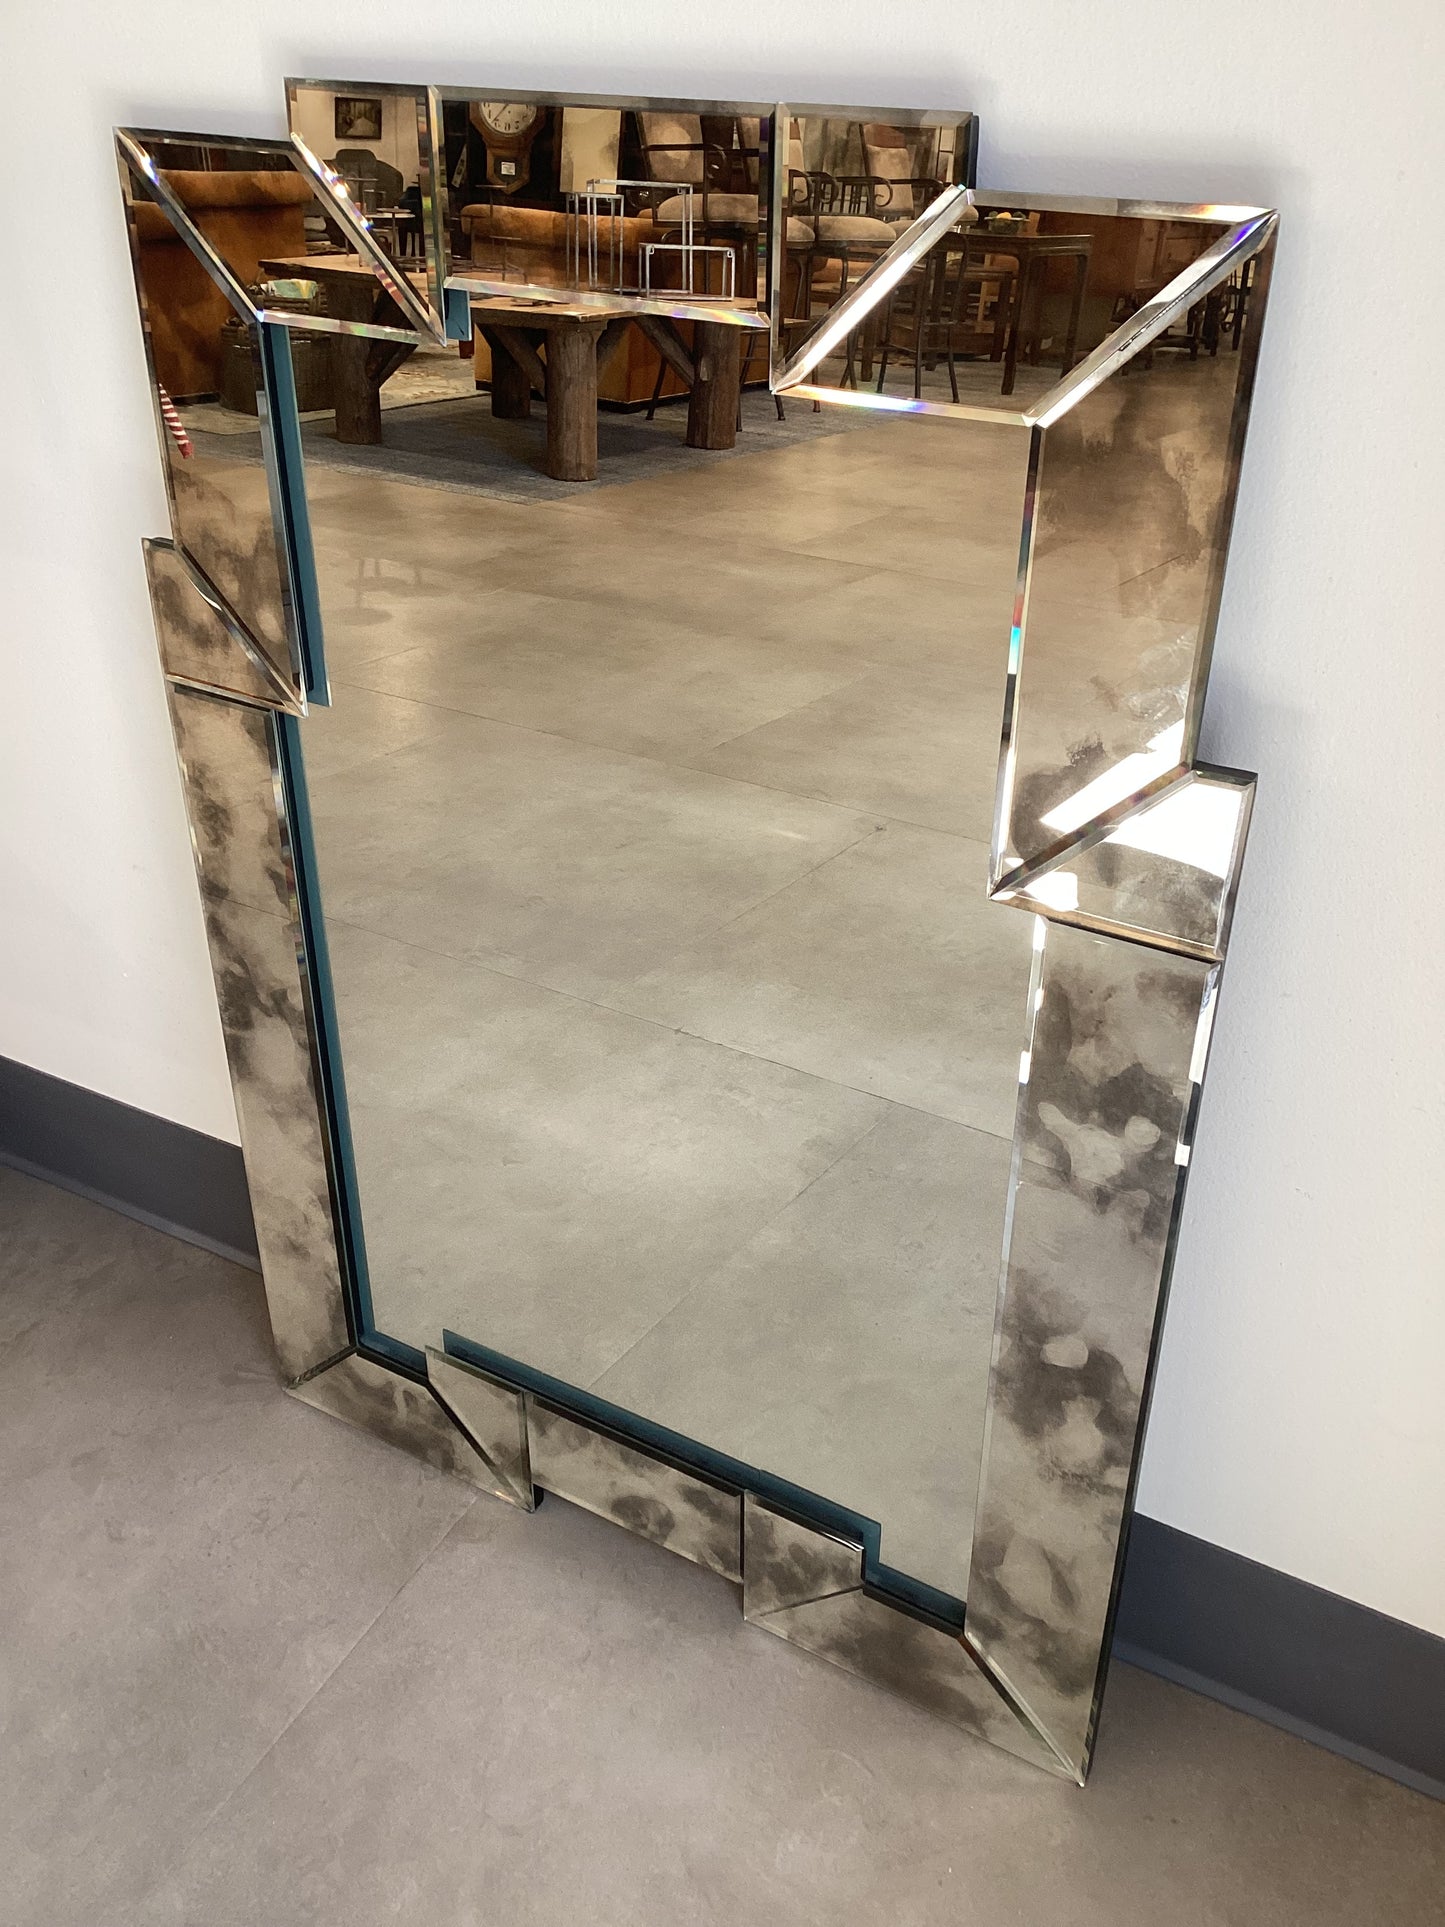 Unique Tiled Glass Mirror